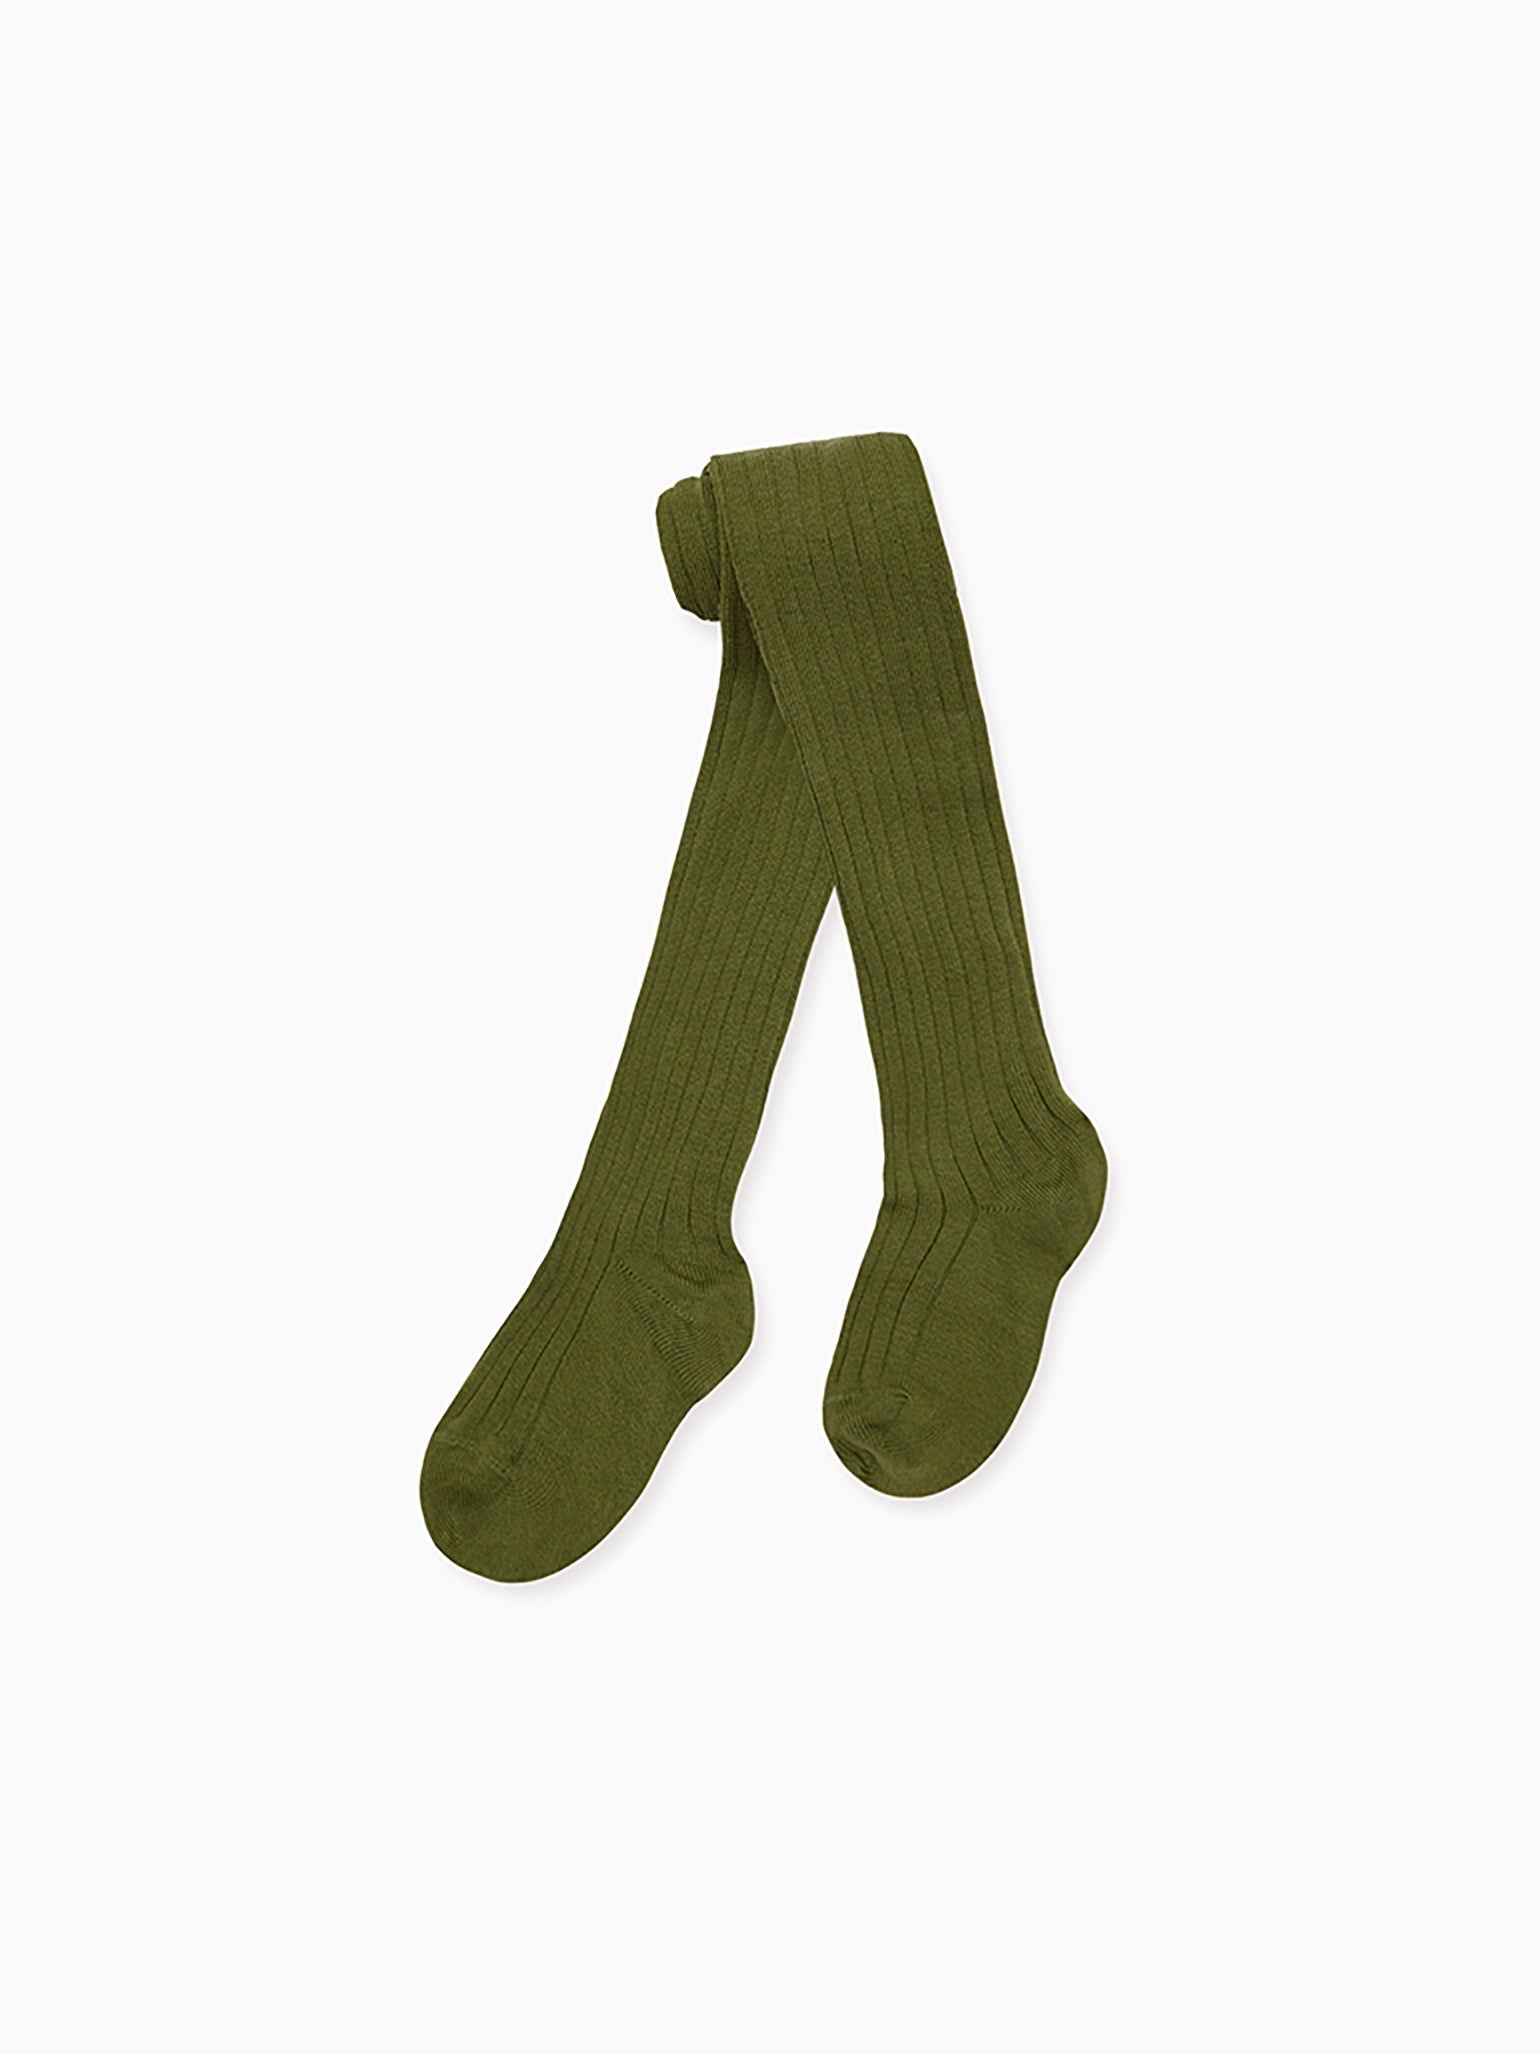 Buy online Green Acrylic Woolen Legging from winter wear for Women